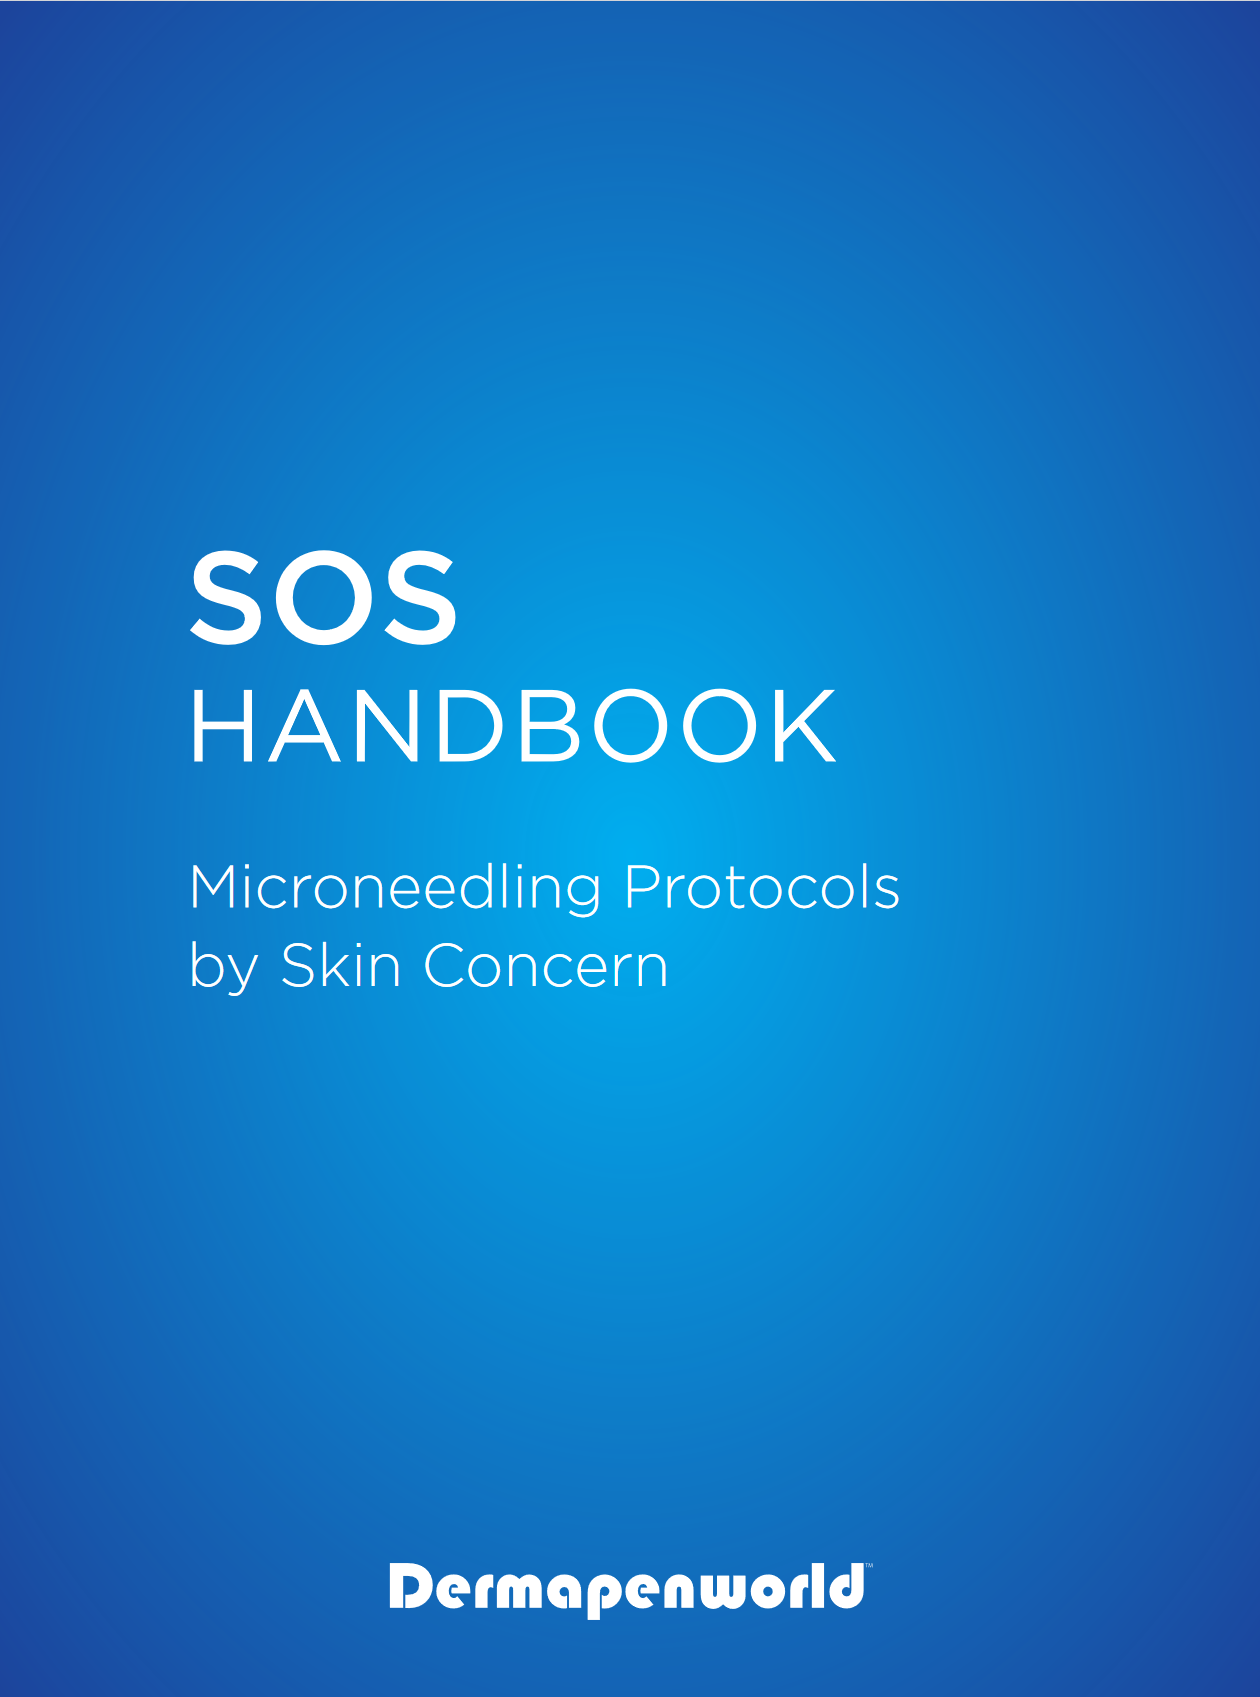 SOS Handbook Microneedling Protocols by Skin Concern